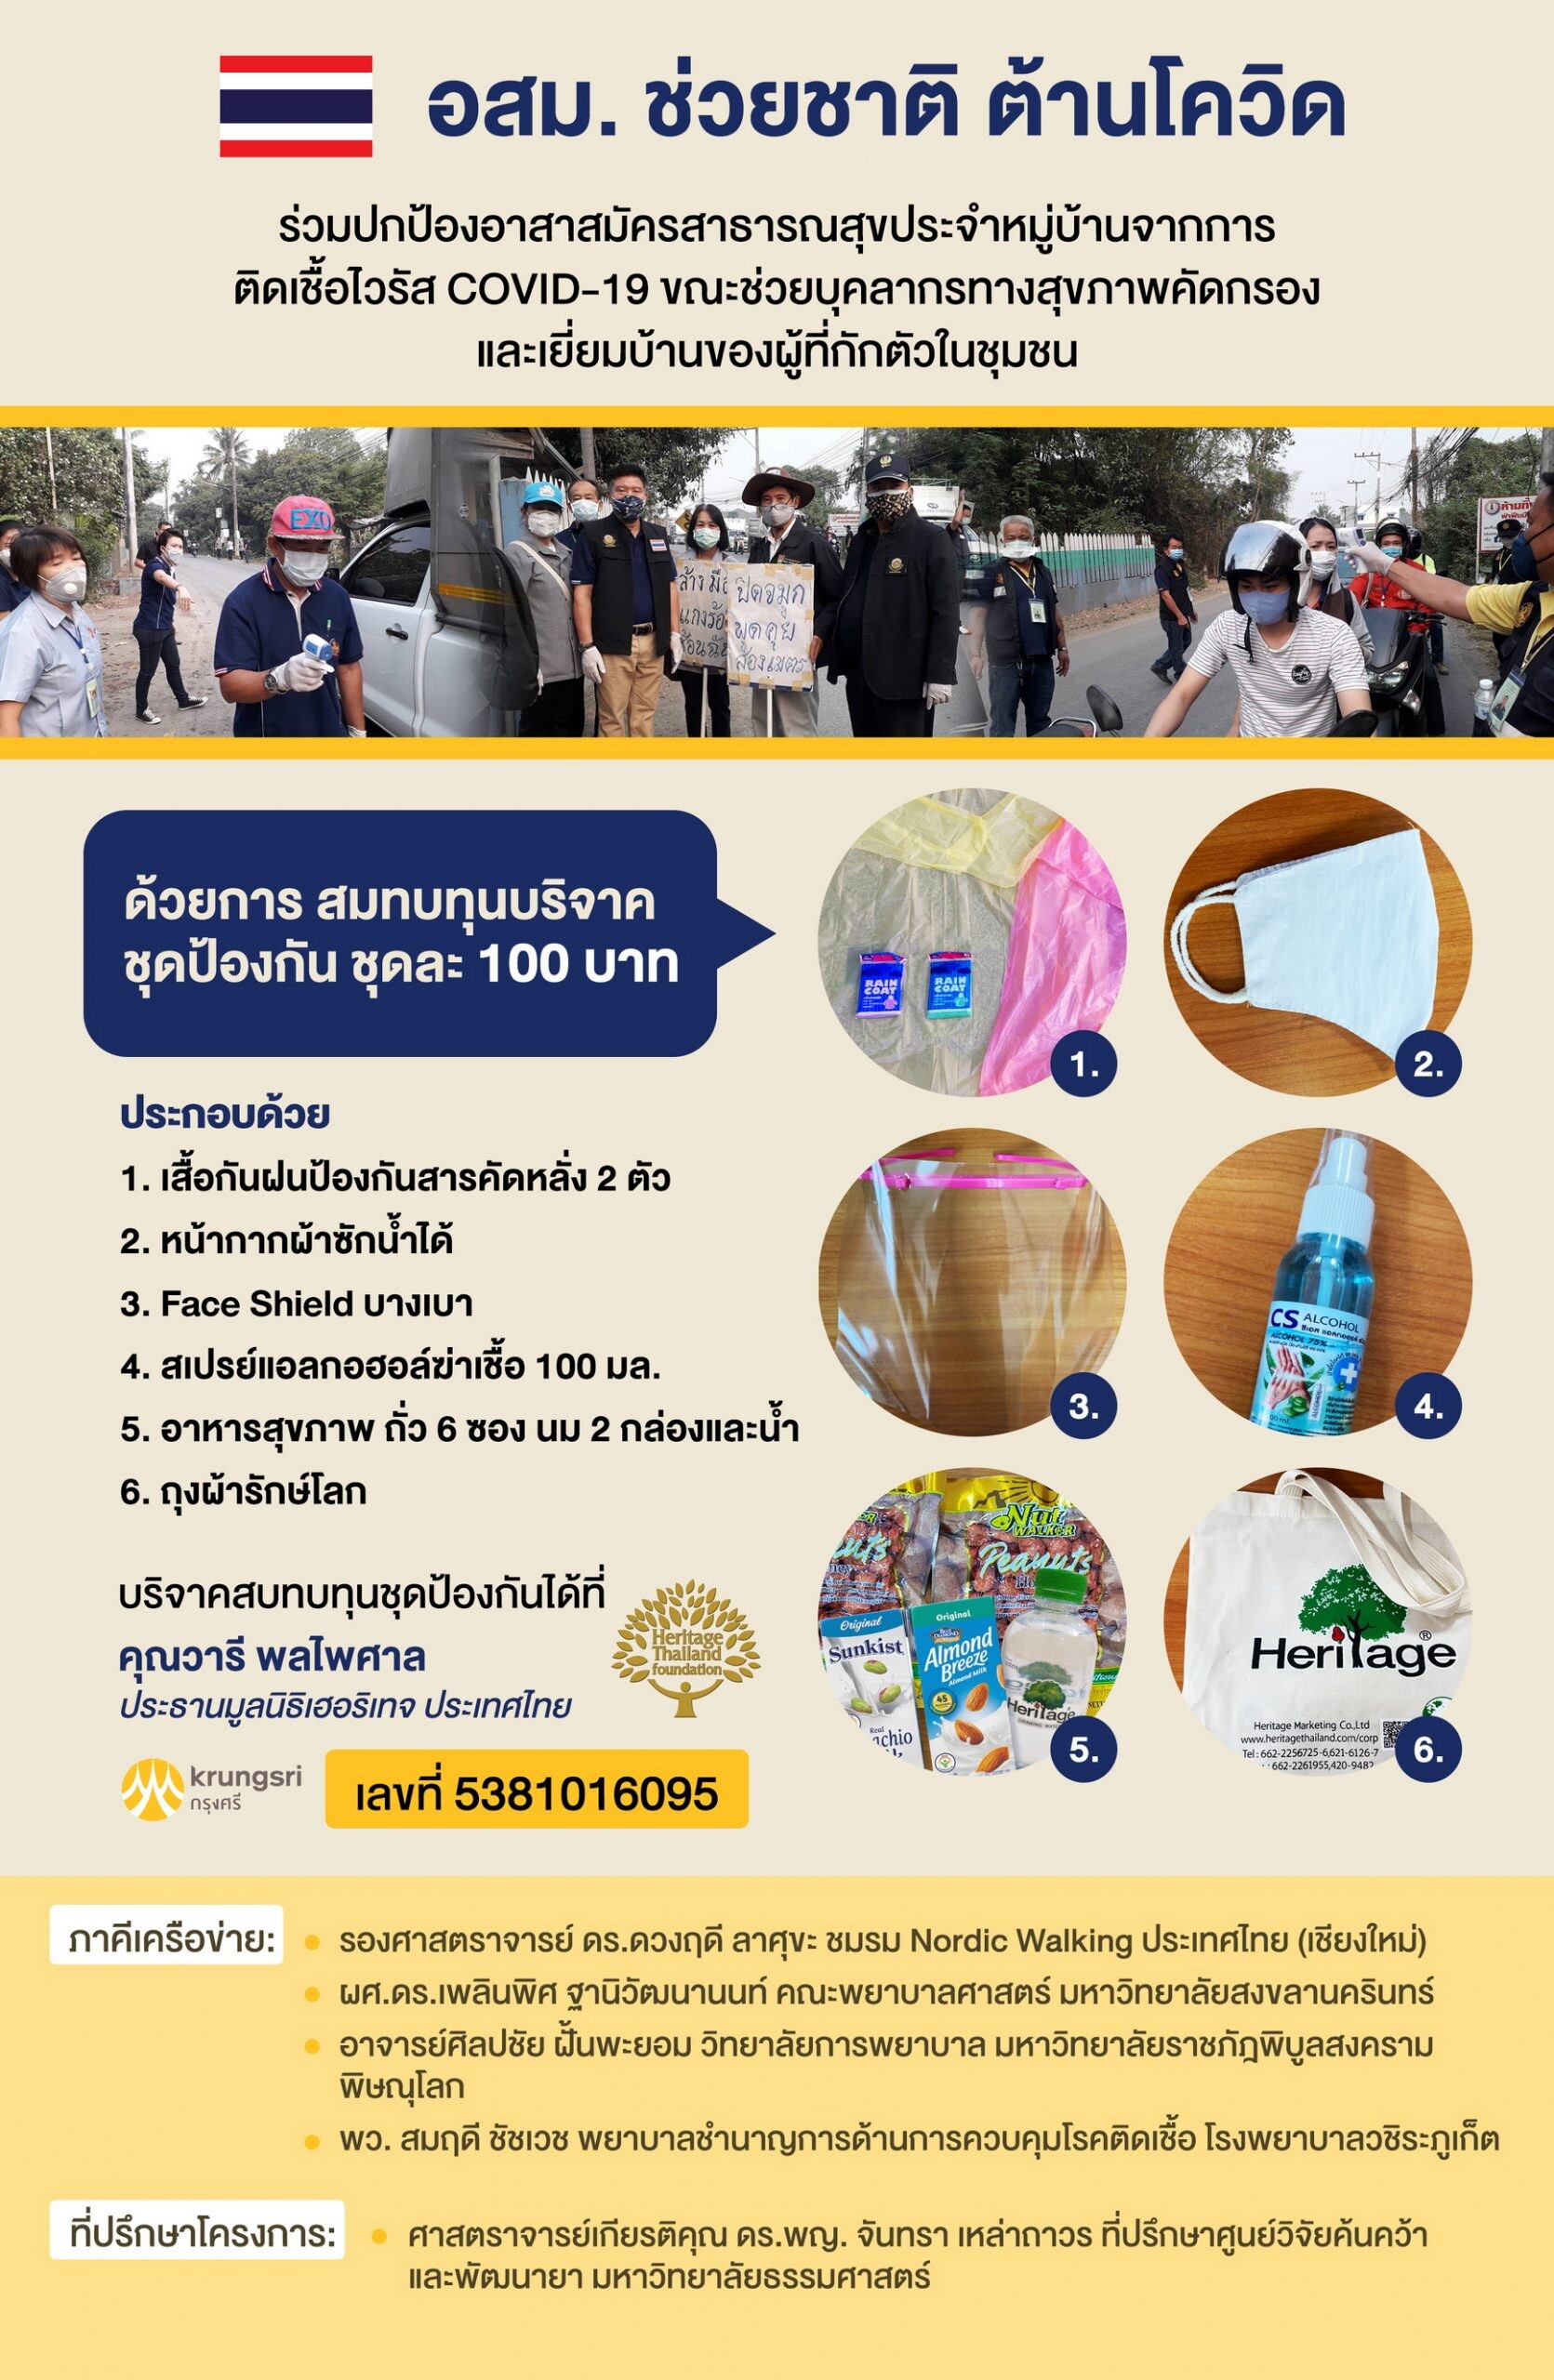 มูลนิธิเฮอริเทจประเทศไทย ร่วมกับภาคีเครือข่ายจัดทำโครงการ “อสม.ช่วยชาติ ต้านโควิด” ส่งมอบชุดป้องกันช่วยเหลืออาสาสมัครสาธารณสุข